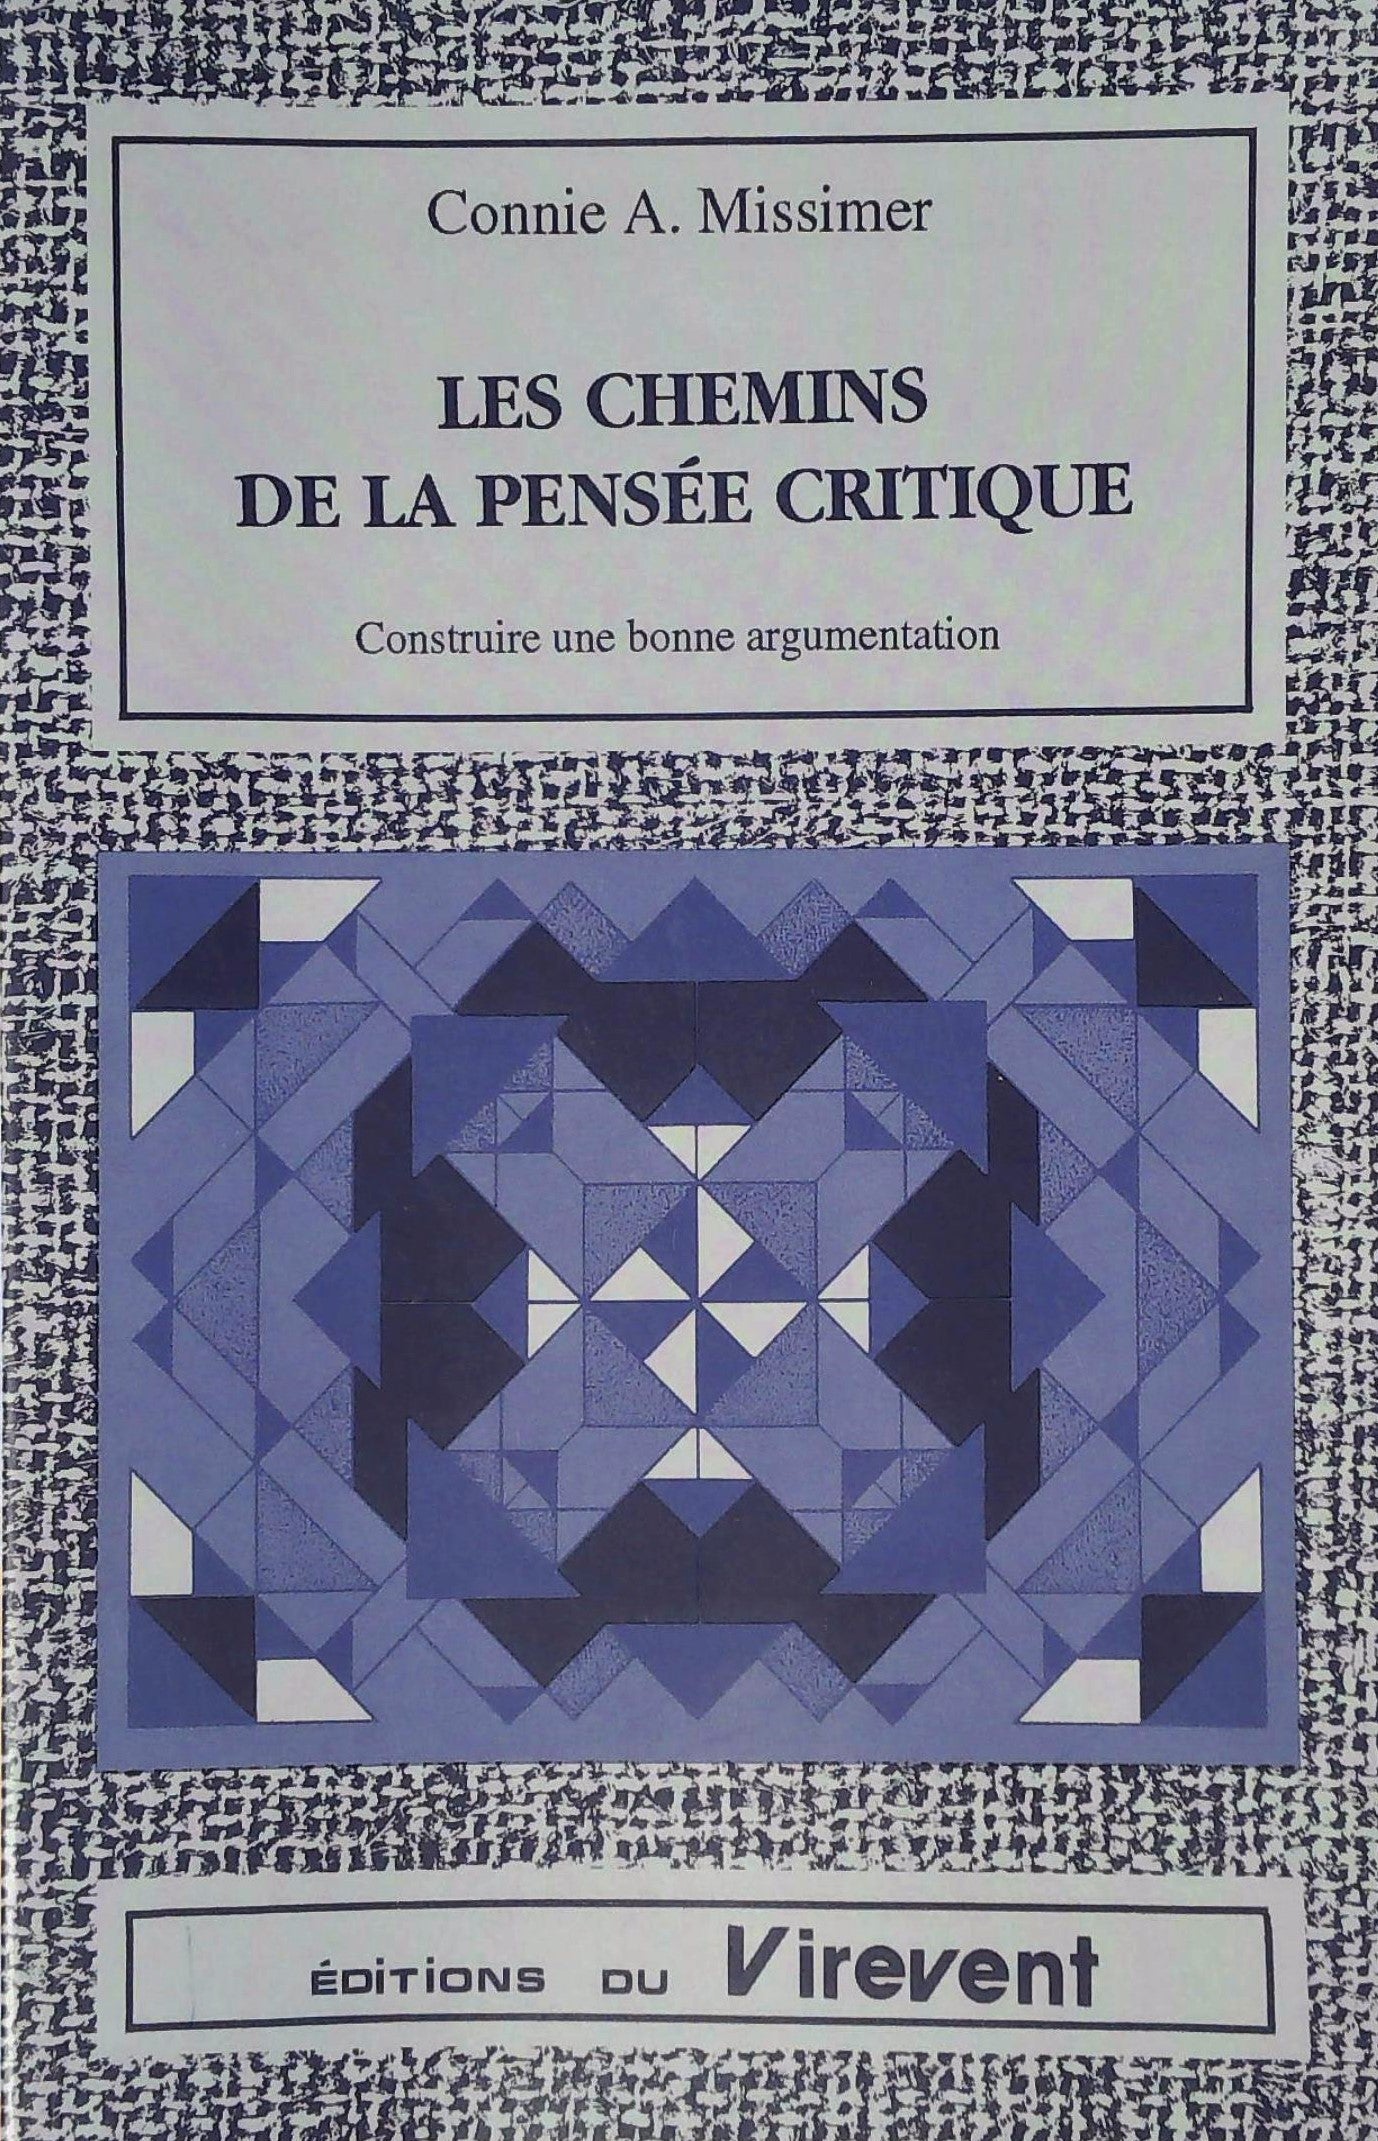 Livre ISBN 2921881012 Les chemins de la pensée critique : Construure une bonne argumentation (Connie A. Missimer)